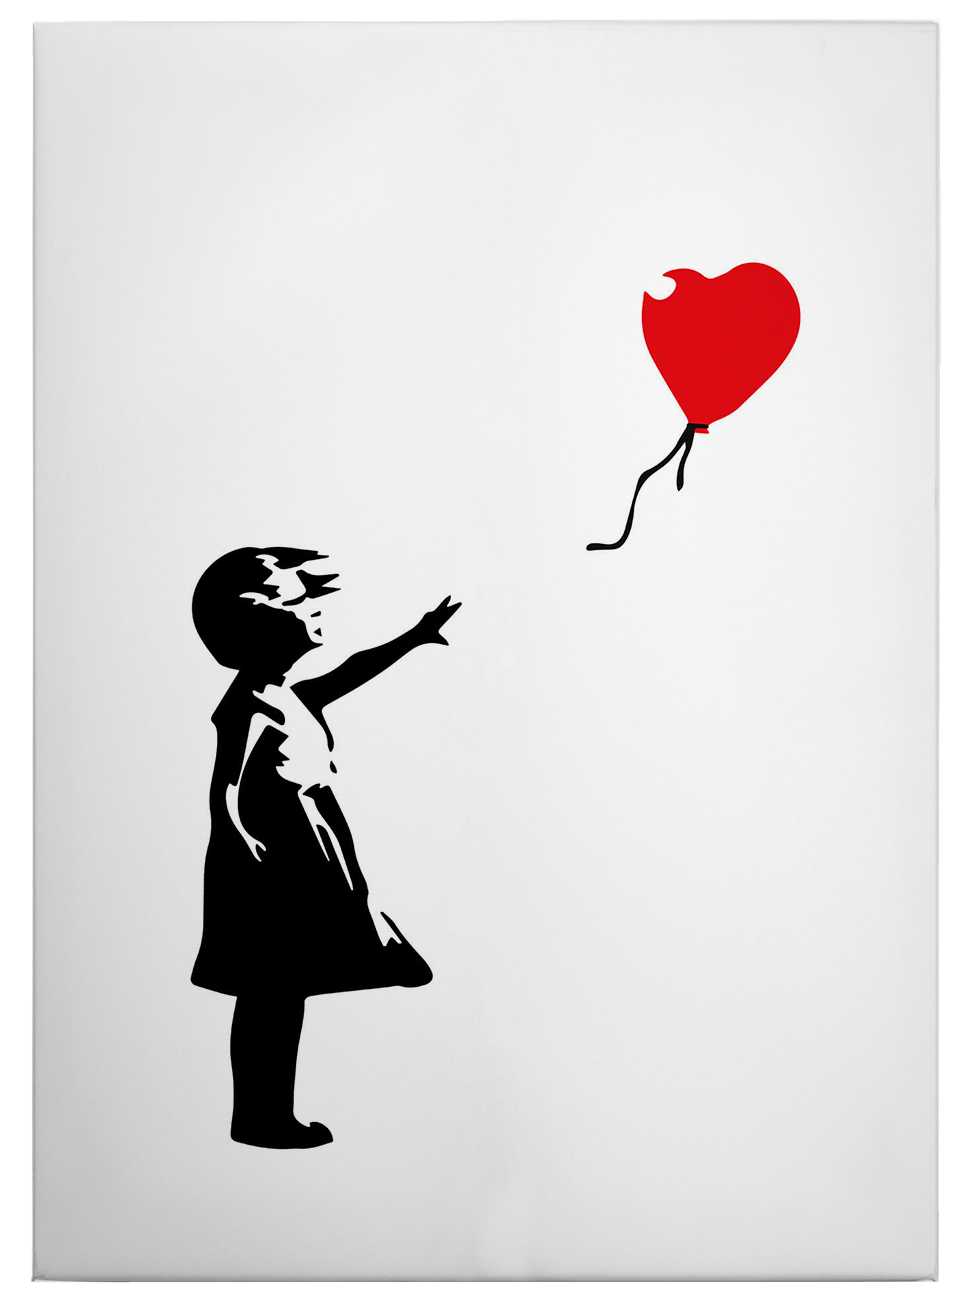             Leinwandbild "Mädchen mit rotem Luftballon" von Banksy – 0,50 m x 0,70 m
        